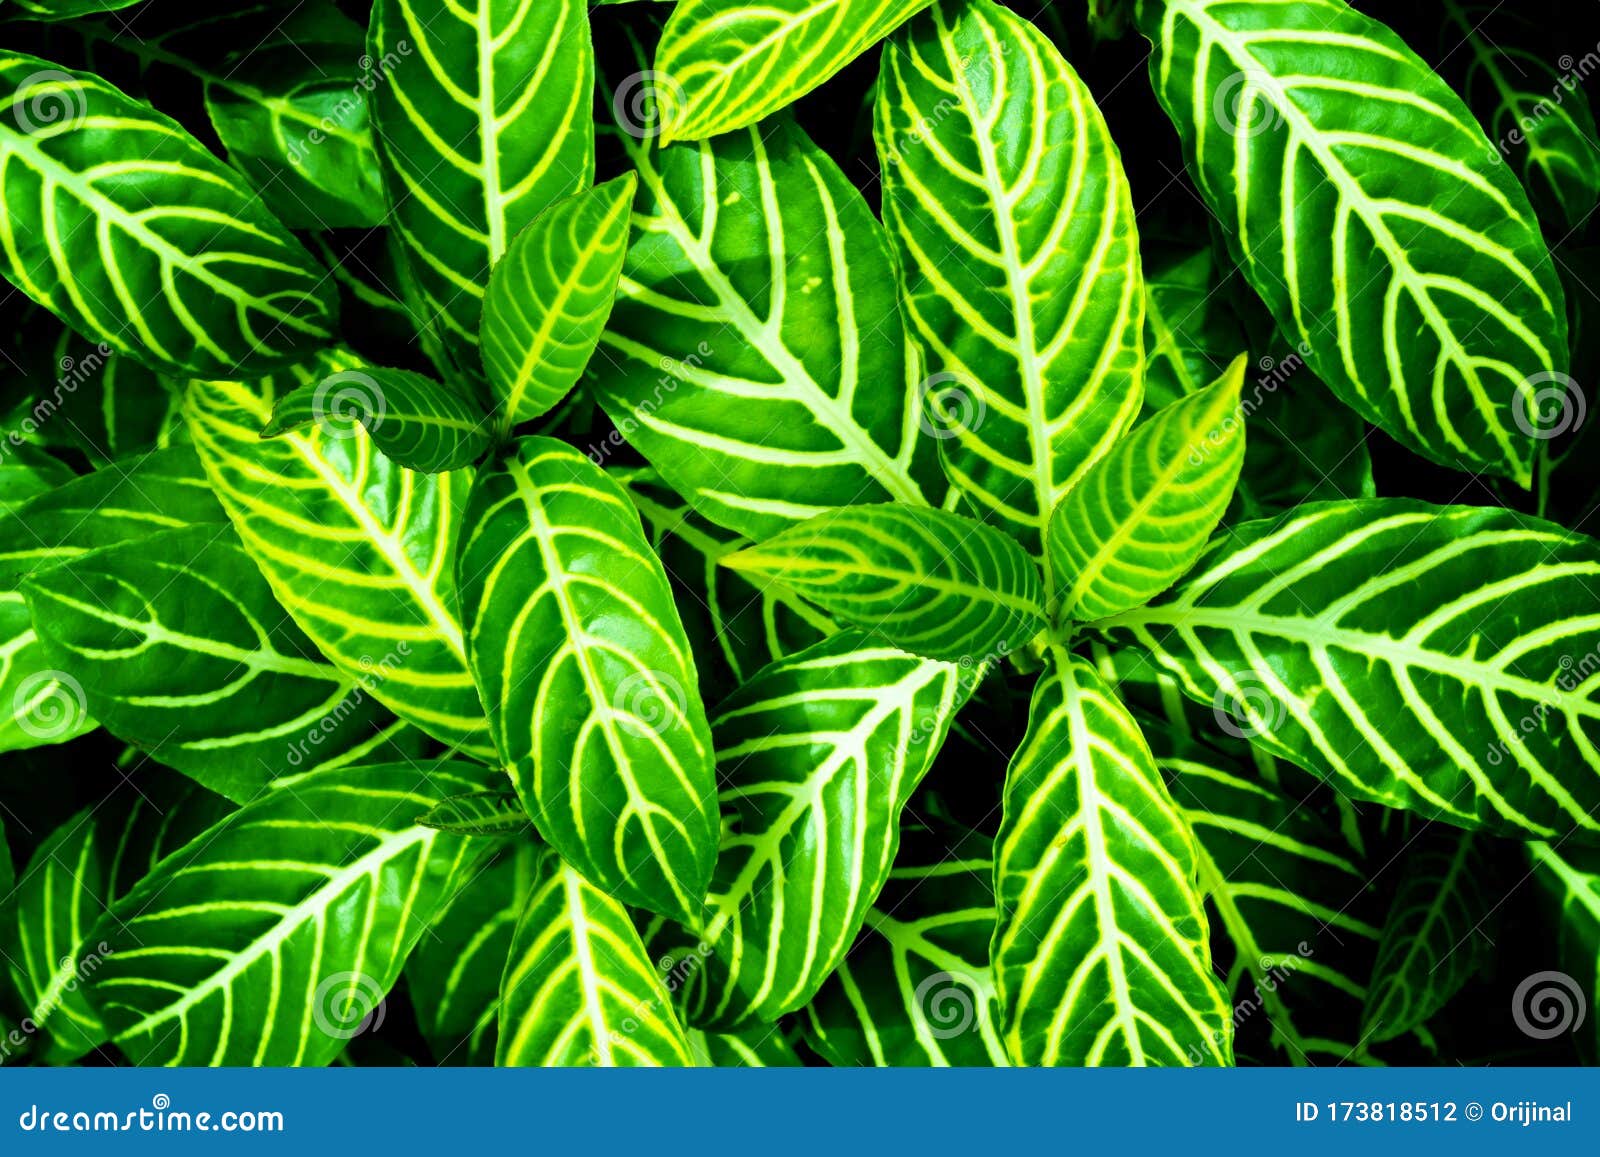 壁纸背景的绿叶背景 自然背景 绿叶纹理 自然深绿色背景库存照片 图片包括有玻色子 自然